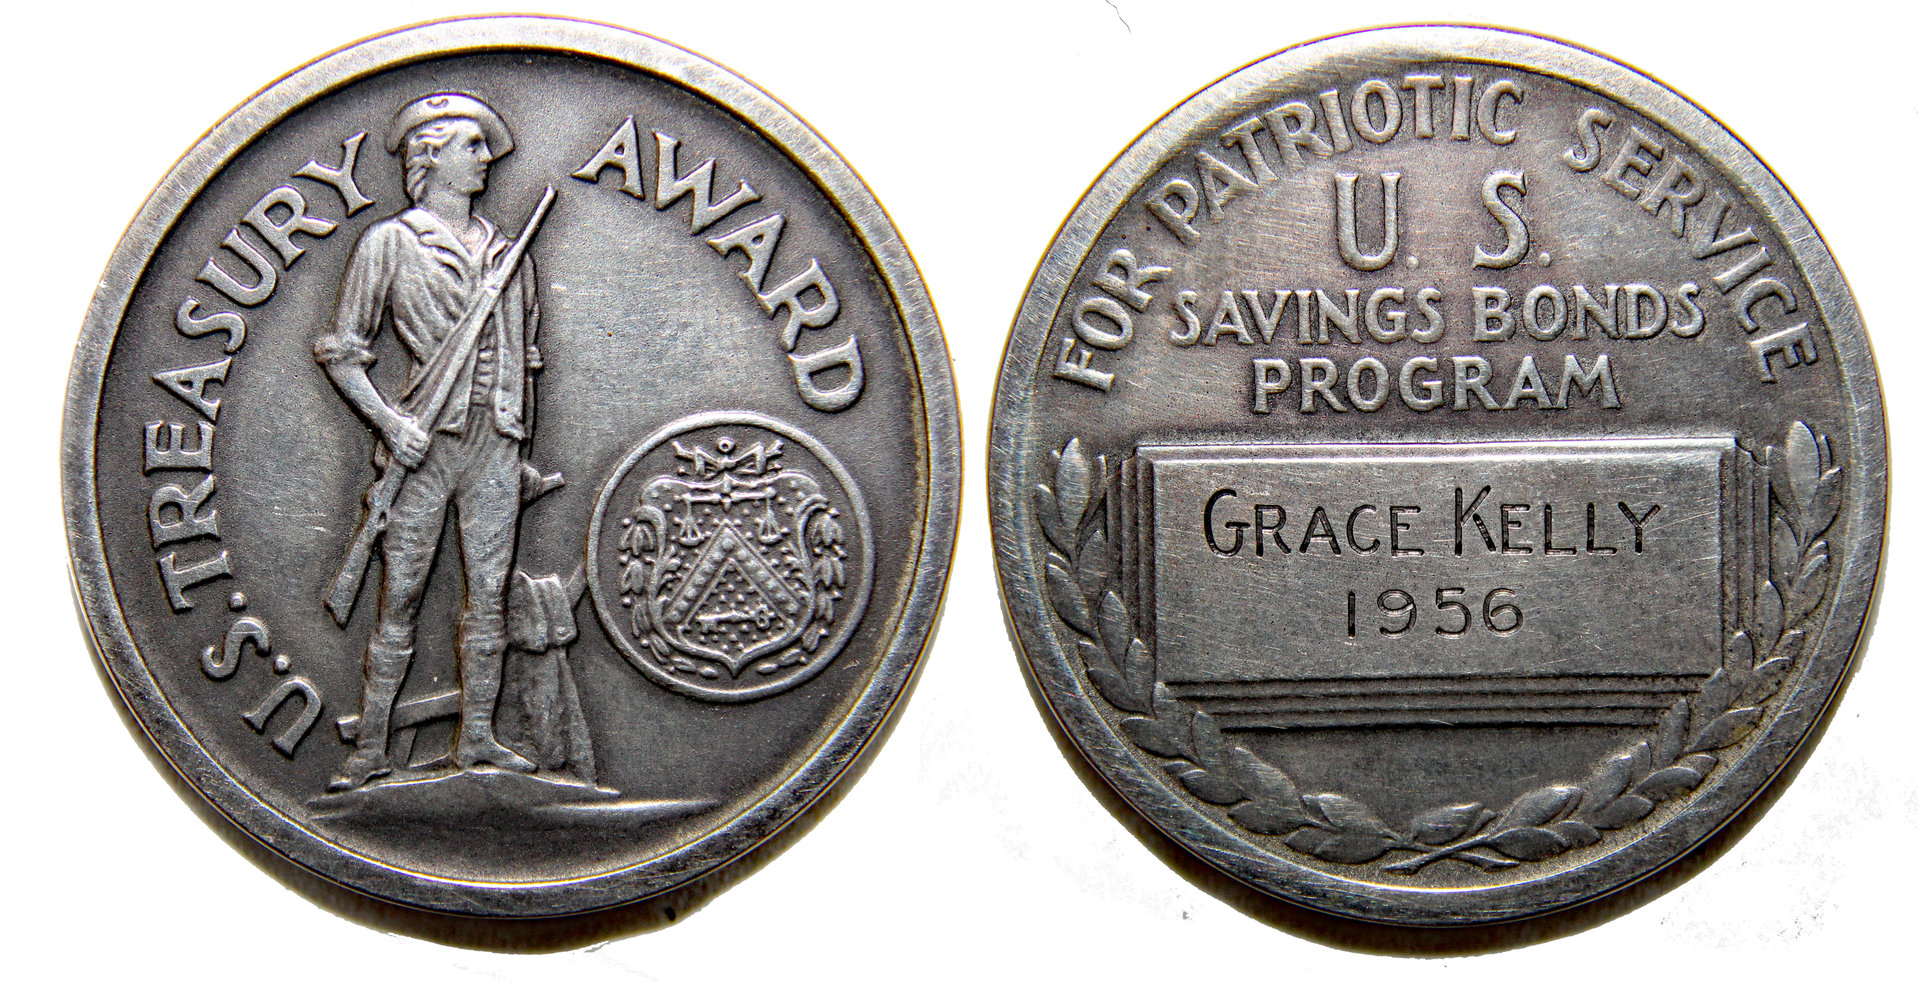 D-Camera Grace Kelly treasury medal, 1956, 21.2 g  eBay 2017 12-24-20.jpg